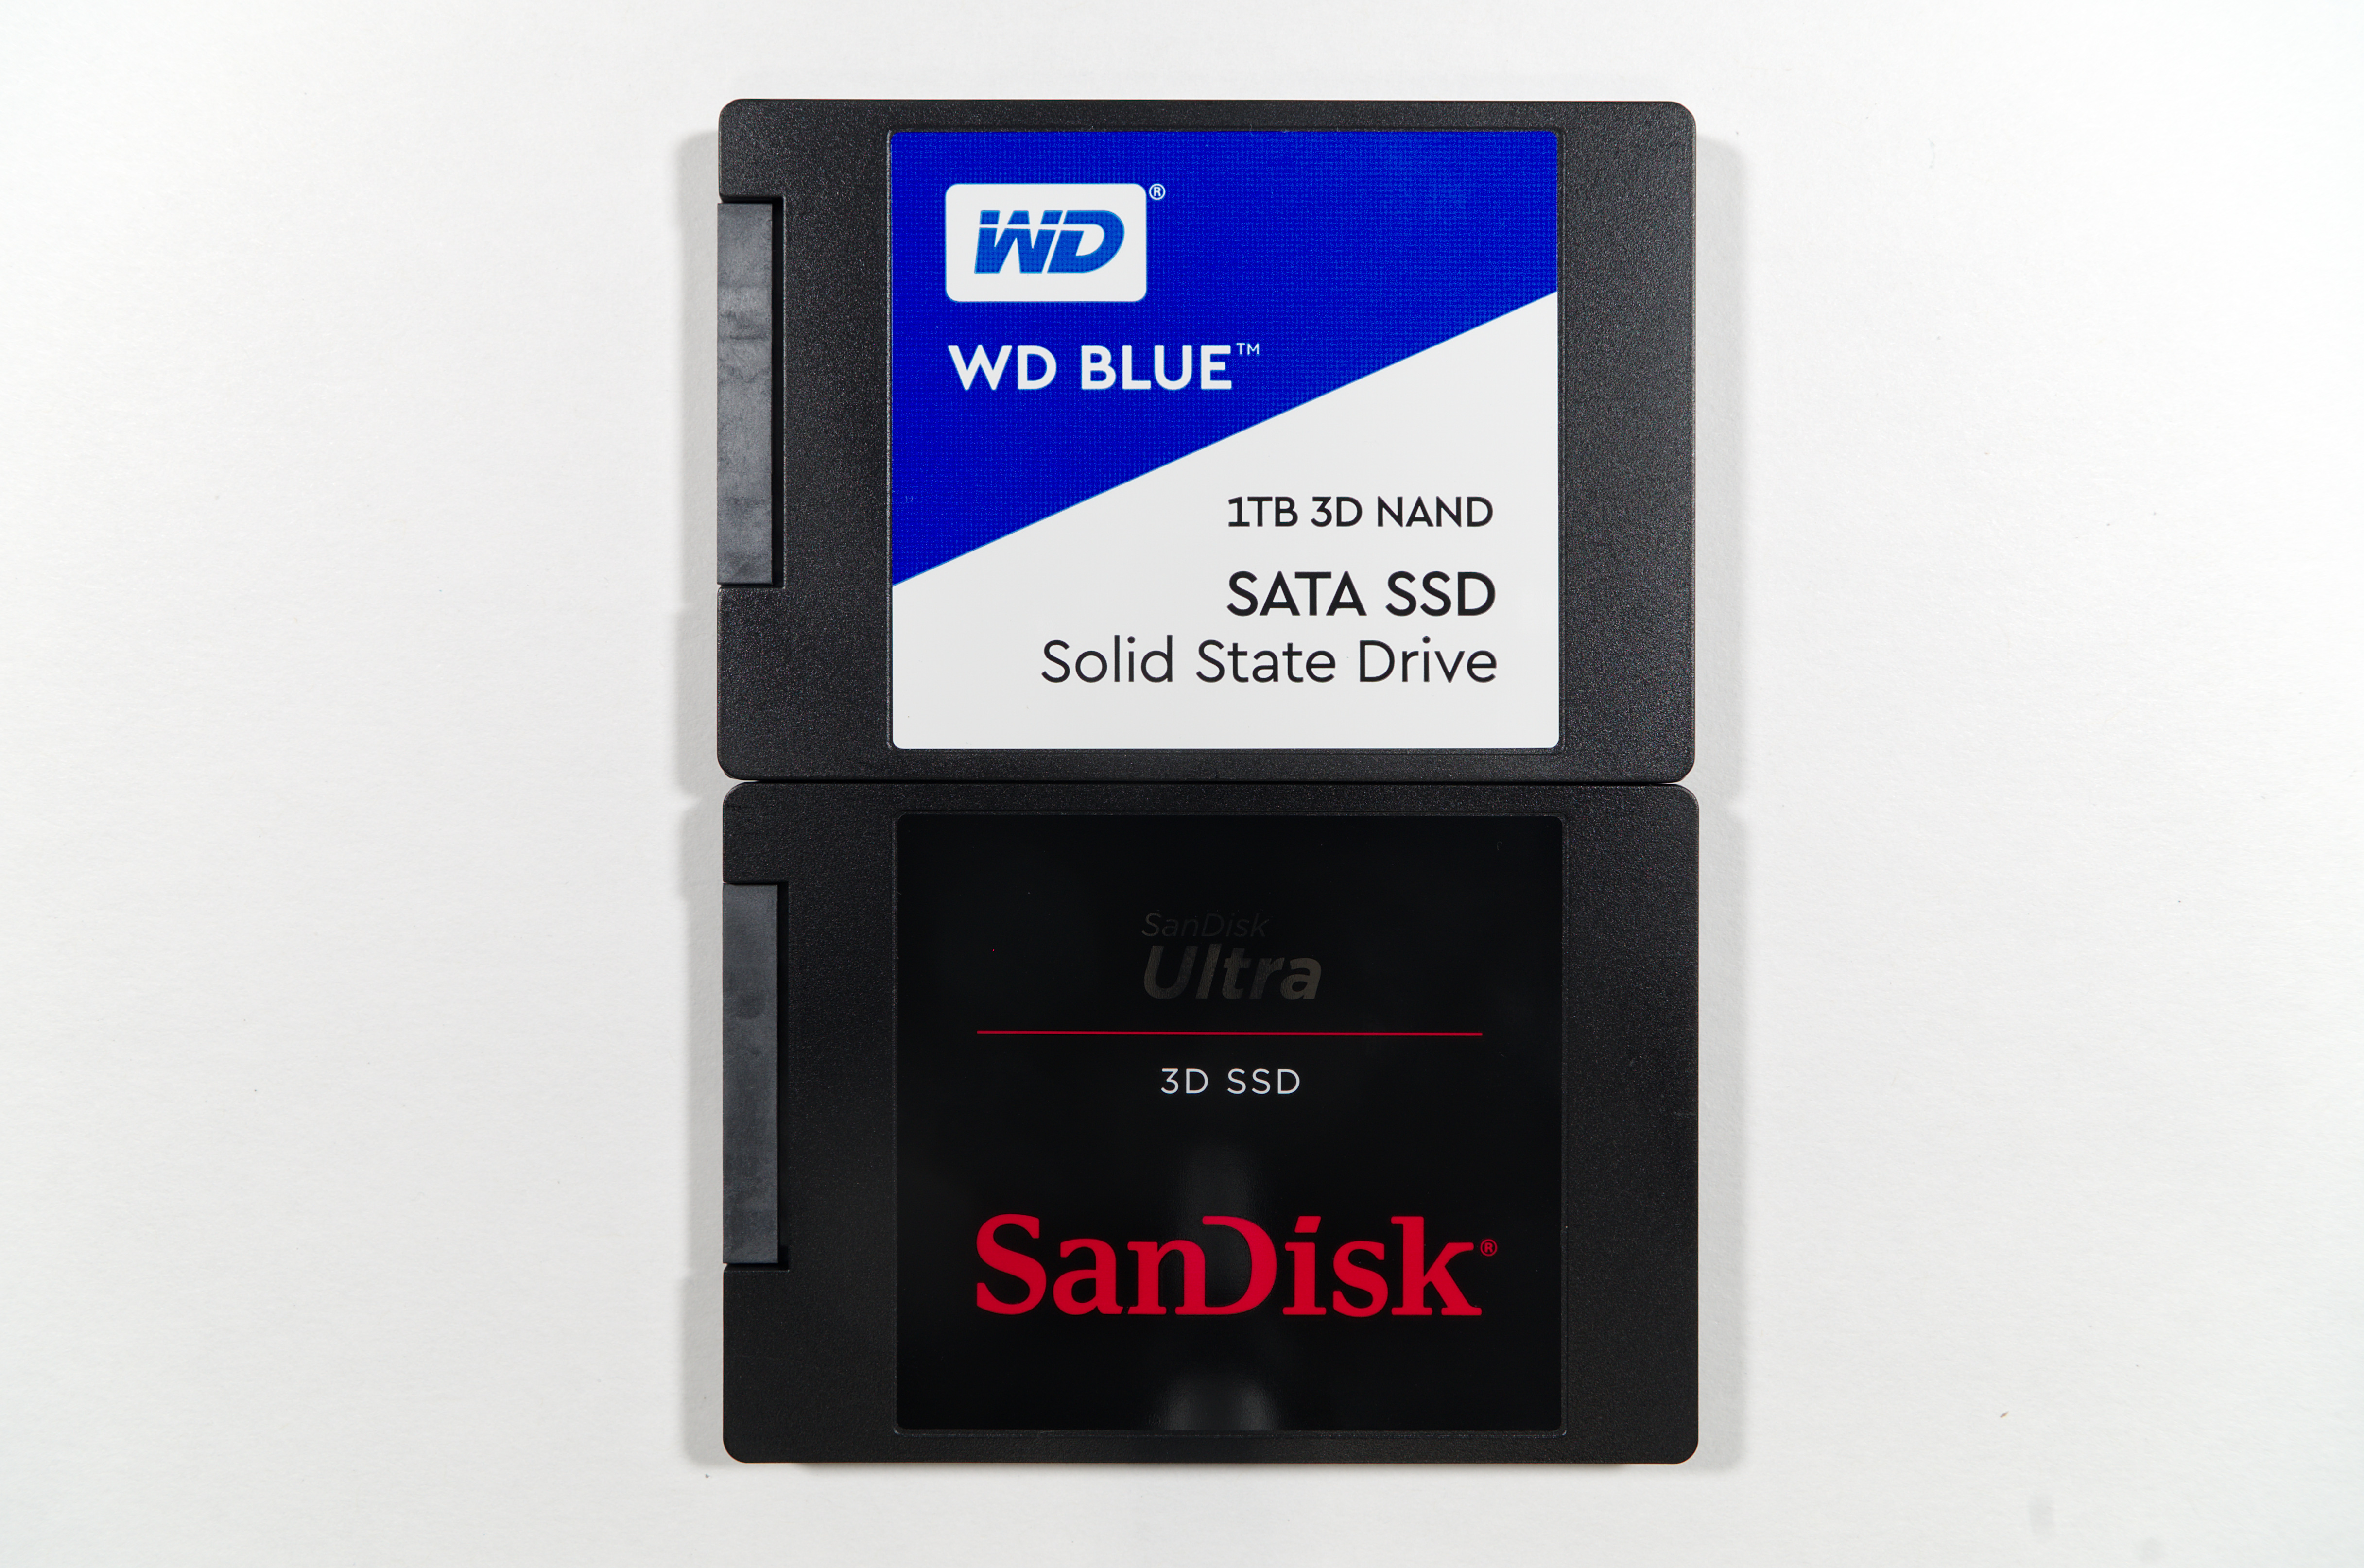 Ssd sandisk 1tb. SANDISK SSD 2tb. SSD 512gb. SANDISK Ultra 3d SSD 2 TB. SANDISK SSD 1tb 3d.